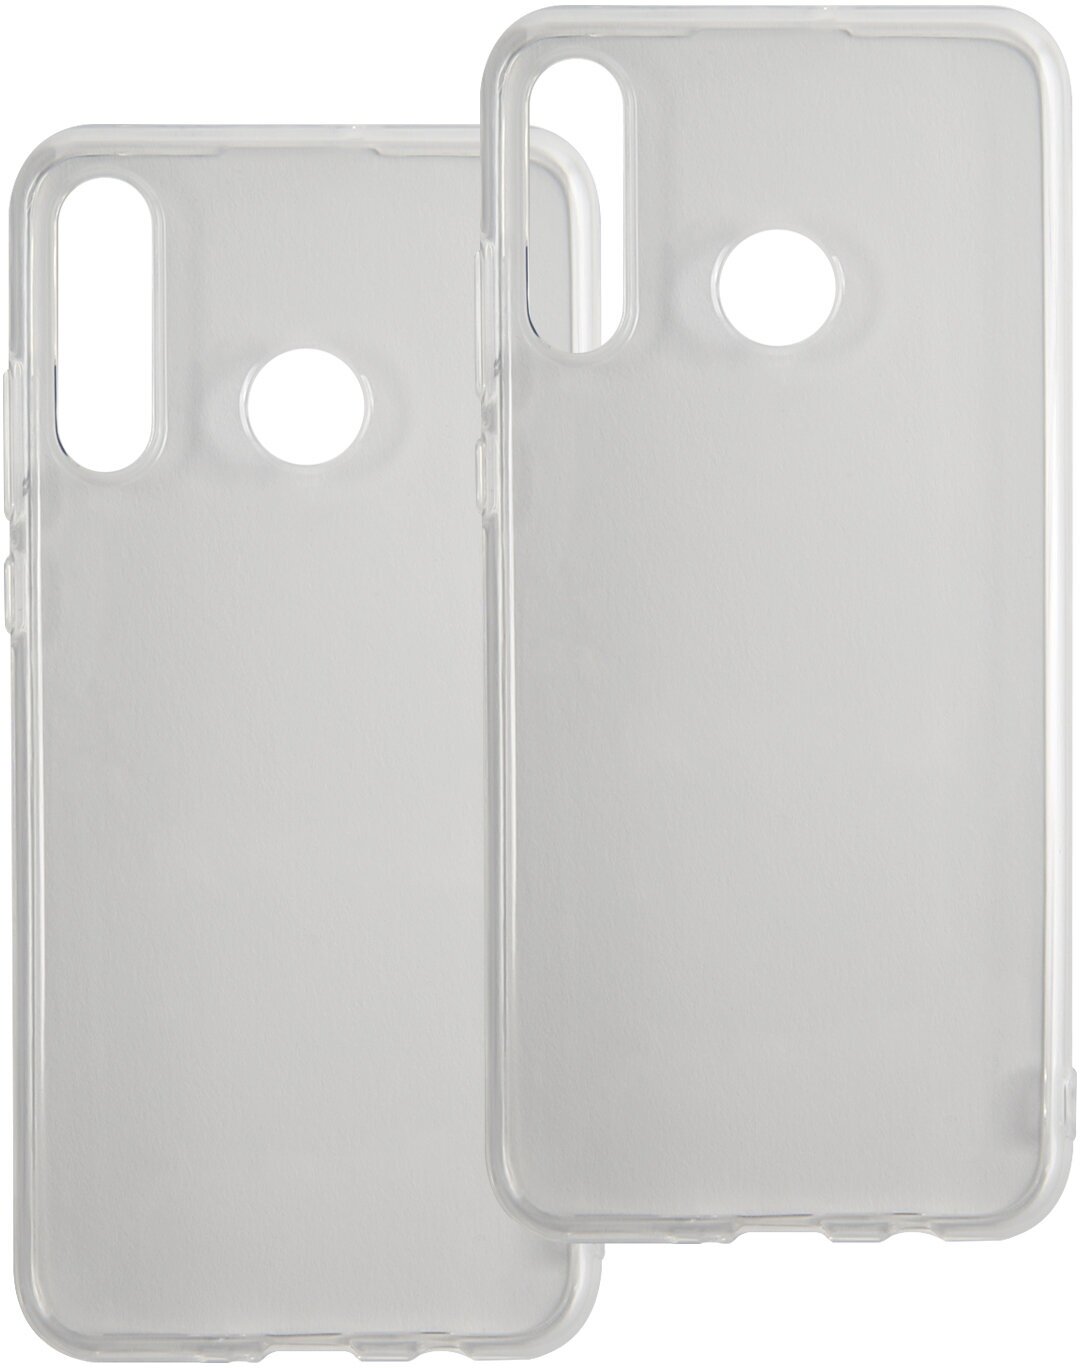 Накладка на Huawei Honor 20s/Силиконовый чехол для телефона Хуавей Хонор 20с/Бампер/Защита от царапин/Защитный чехол прозрачный, 2 шт.